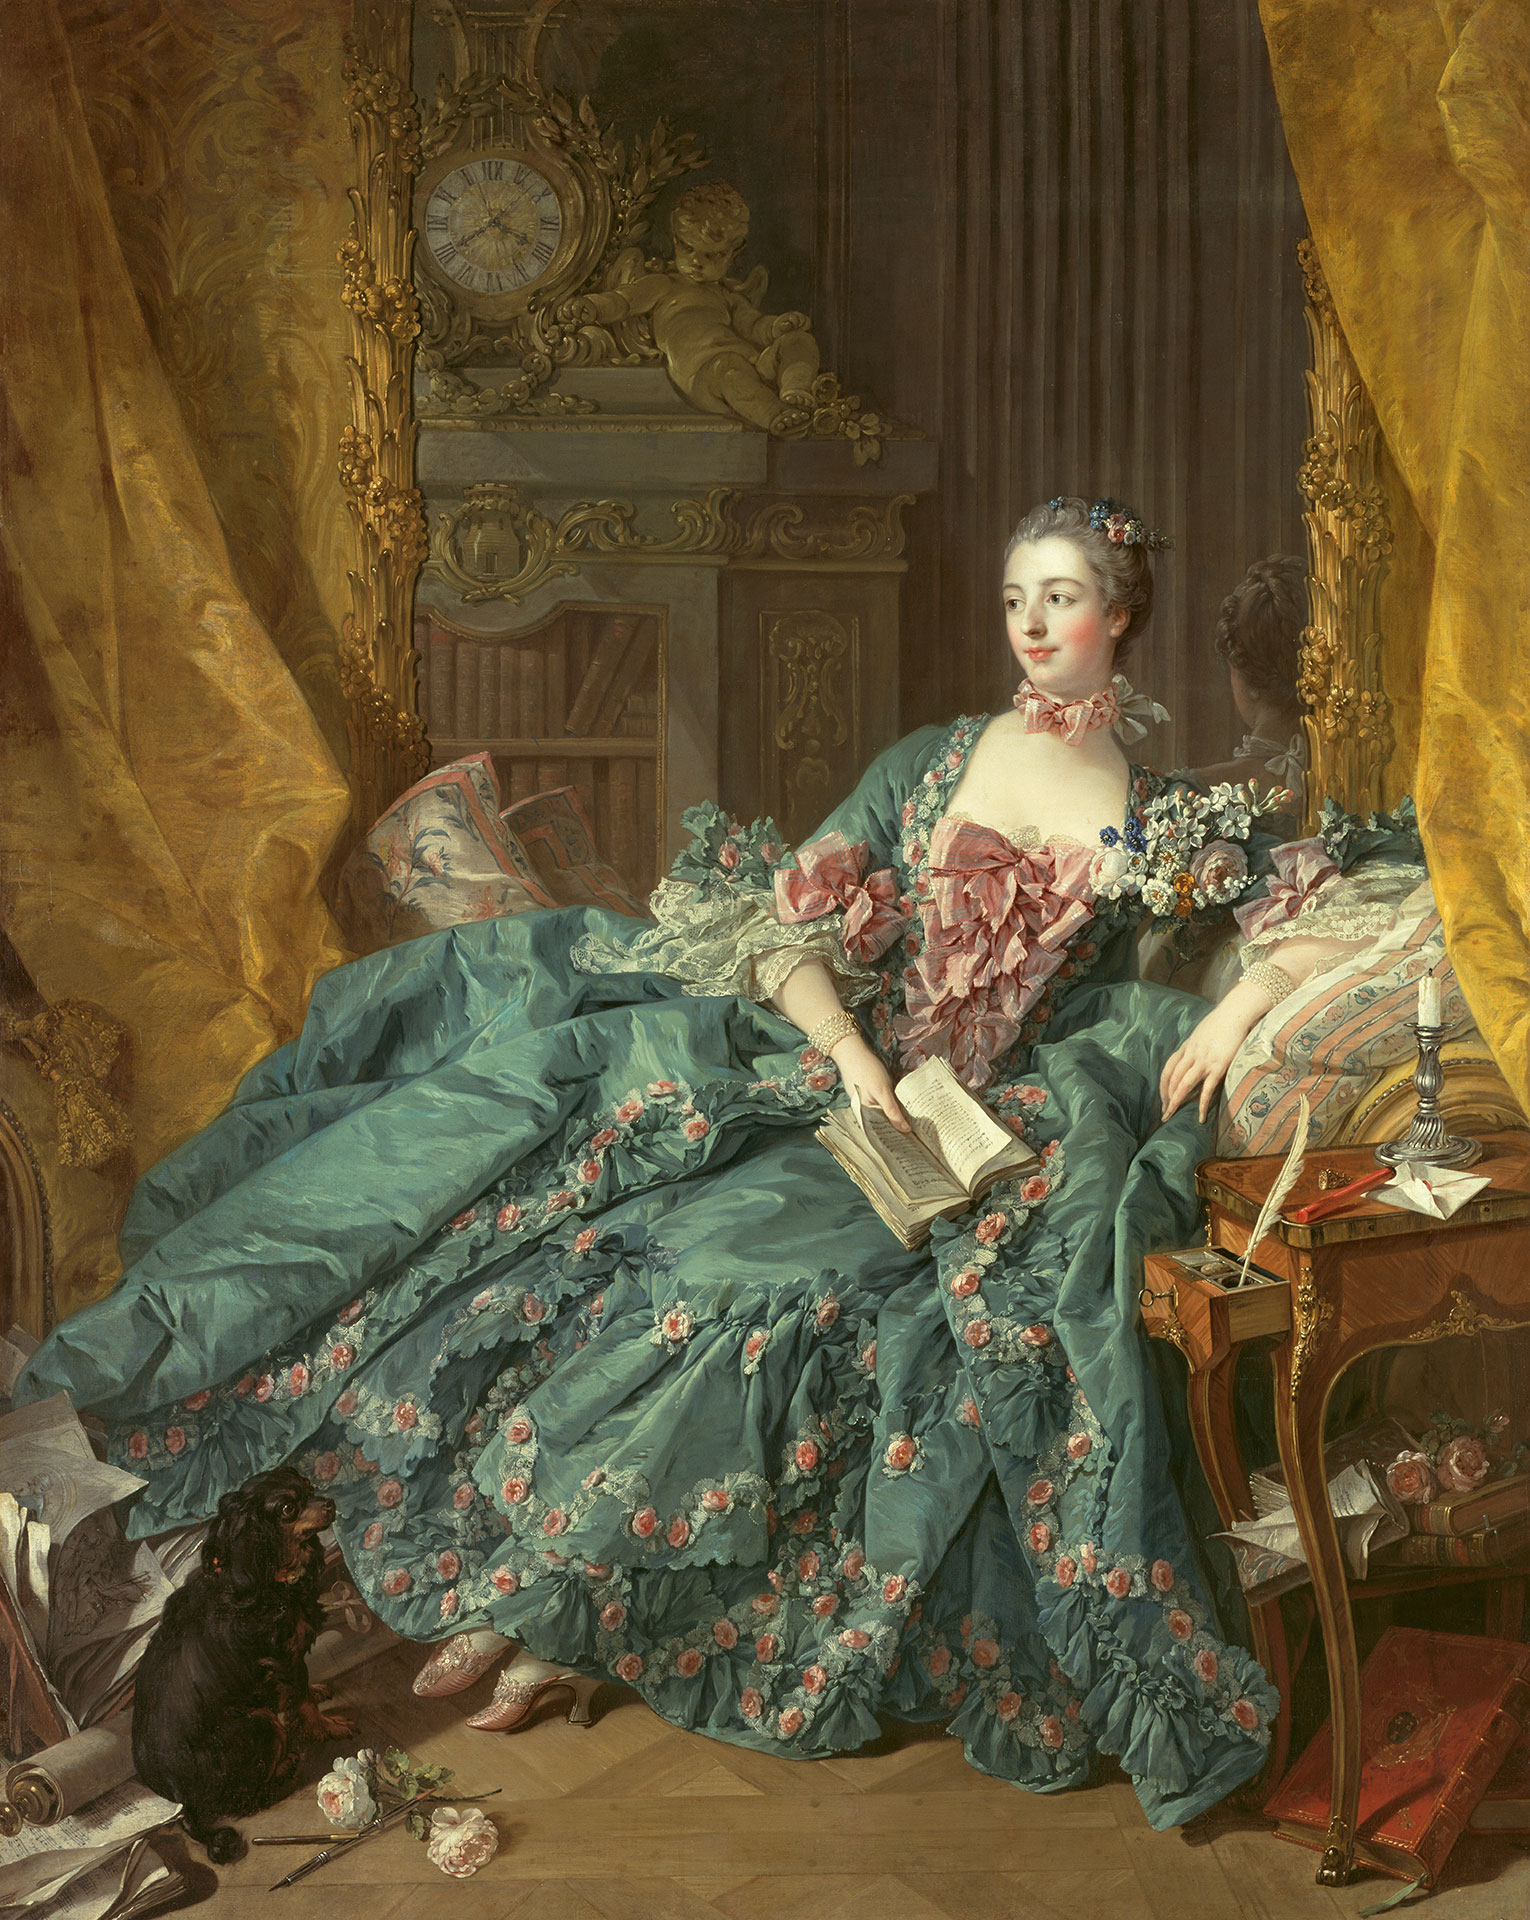 Gemälde Bildnis der Madame de Pompadour von François Boucher, entstanden 1756.